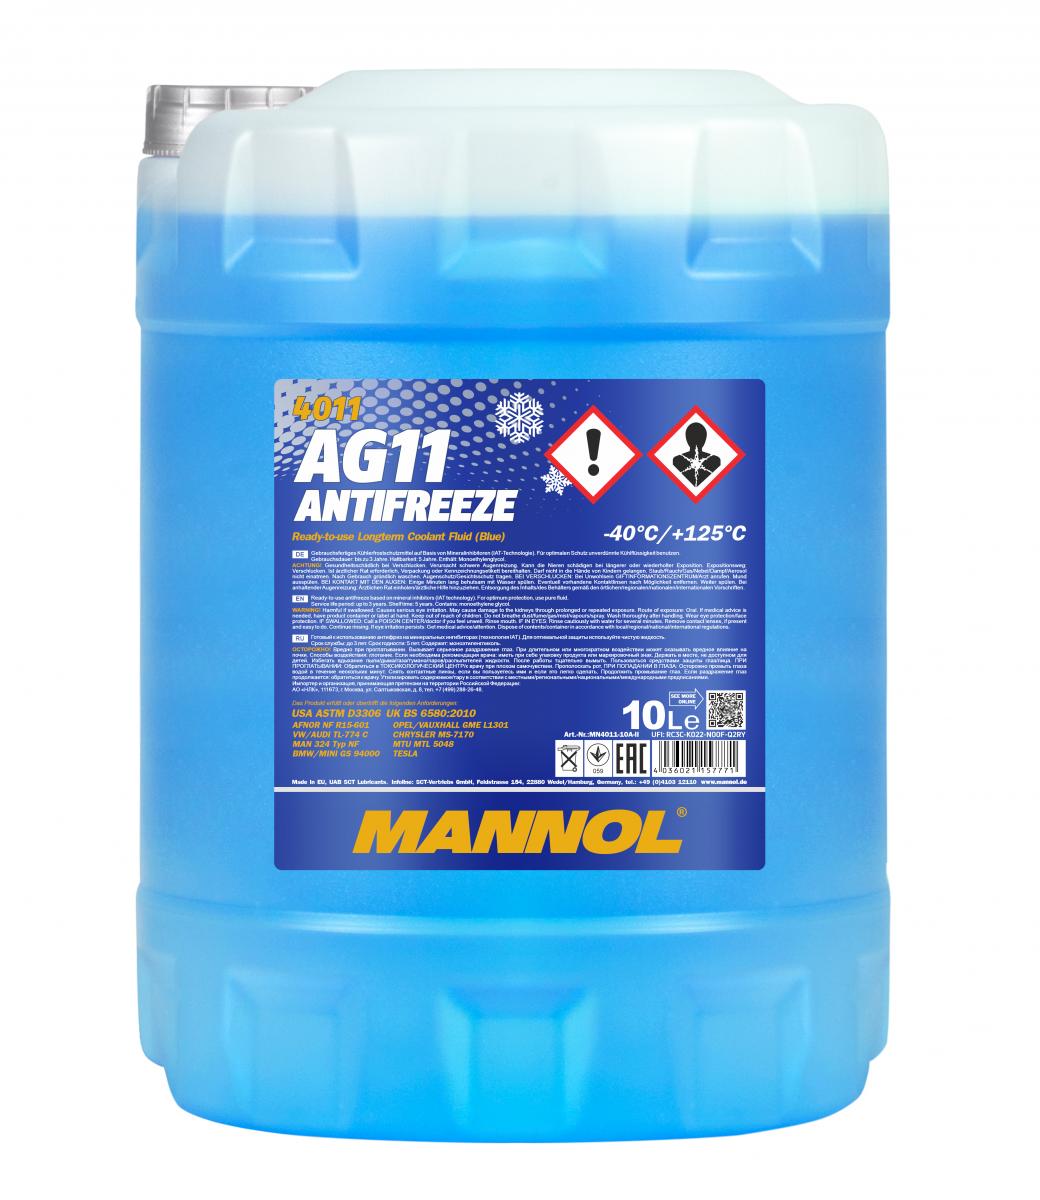 20 Liter (2x10) MANNOL Antifreeze AG11 Fertiggemisch blau -40°C Kühlerfrostschutz